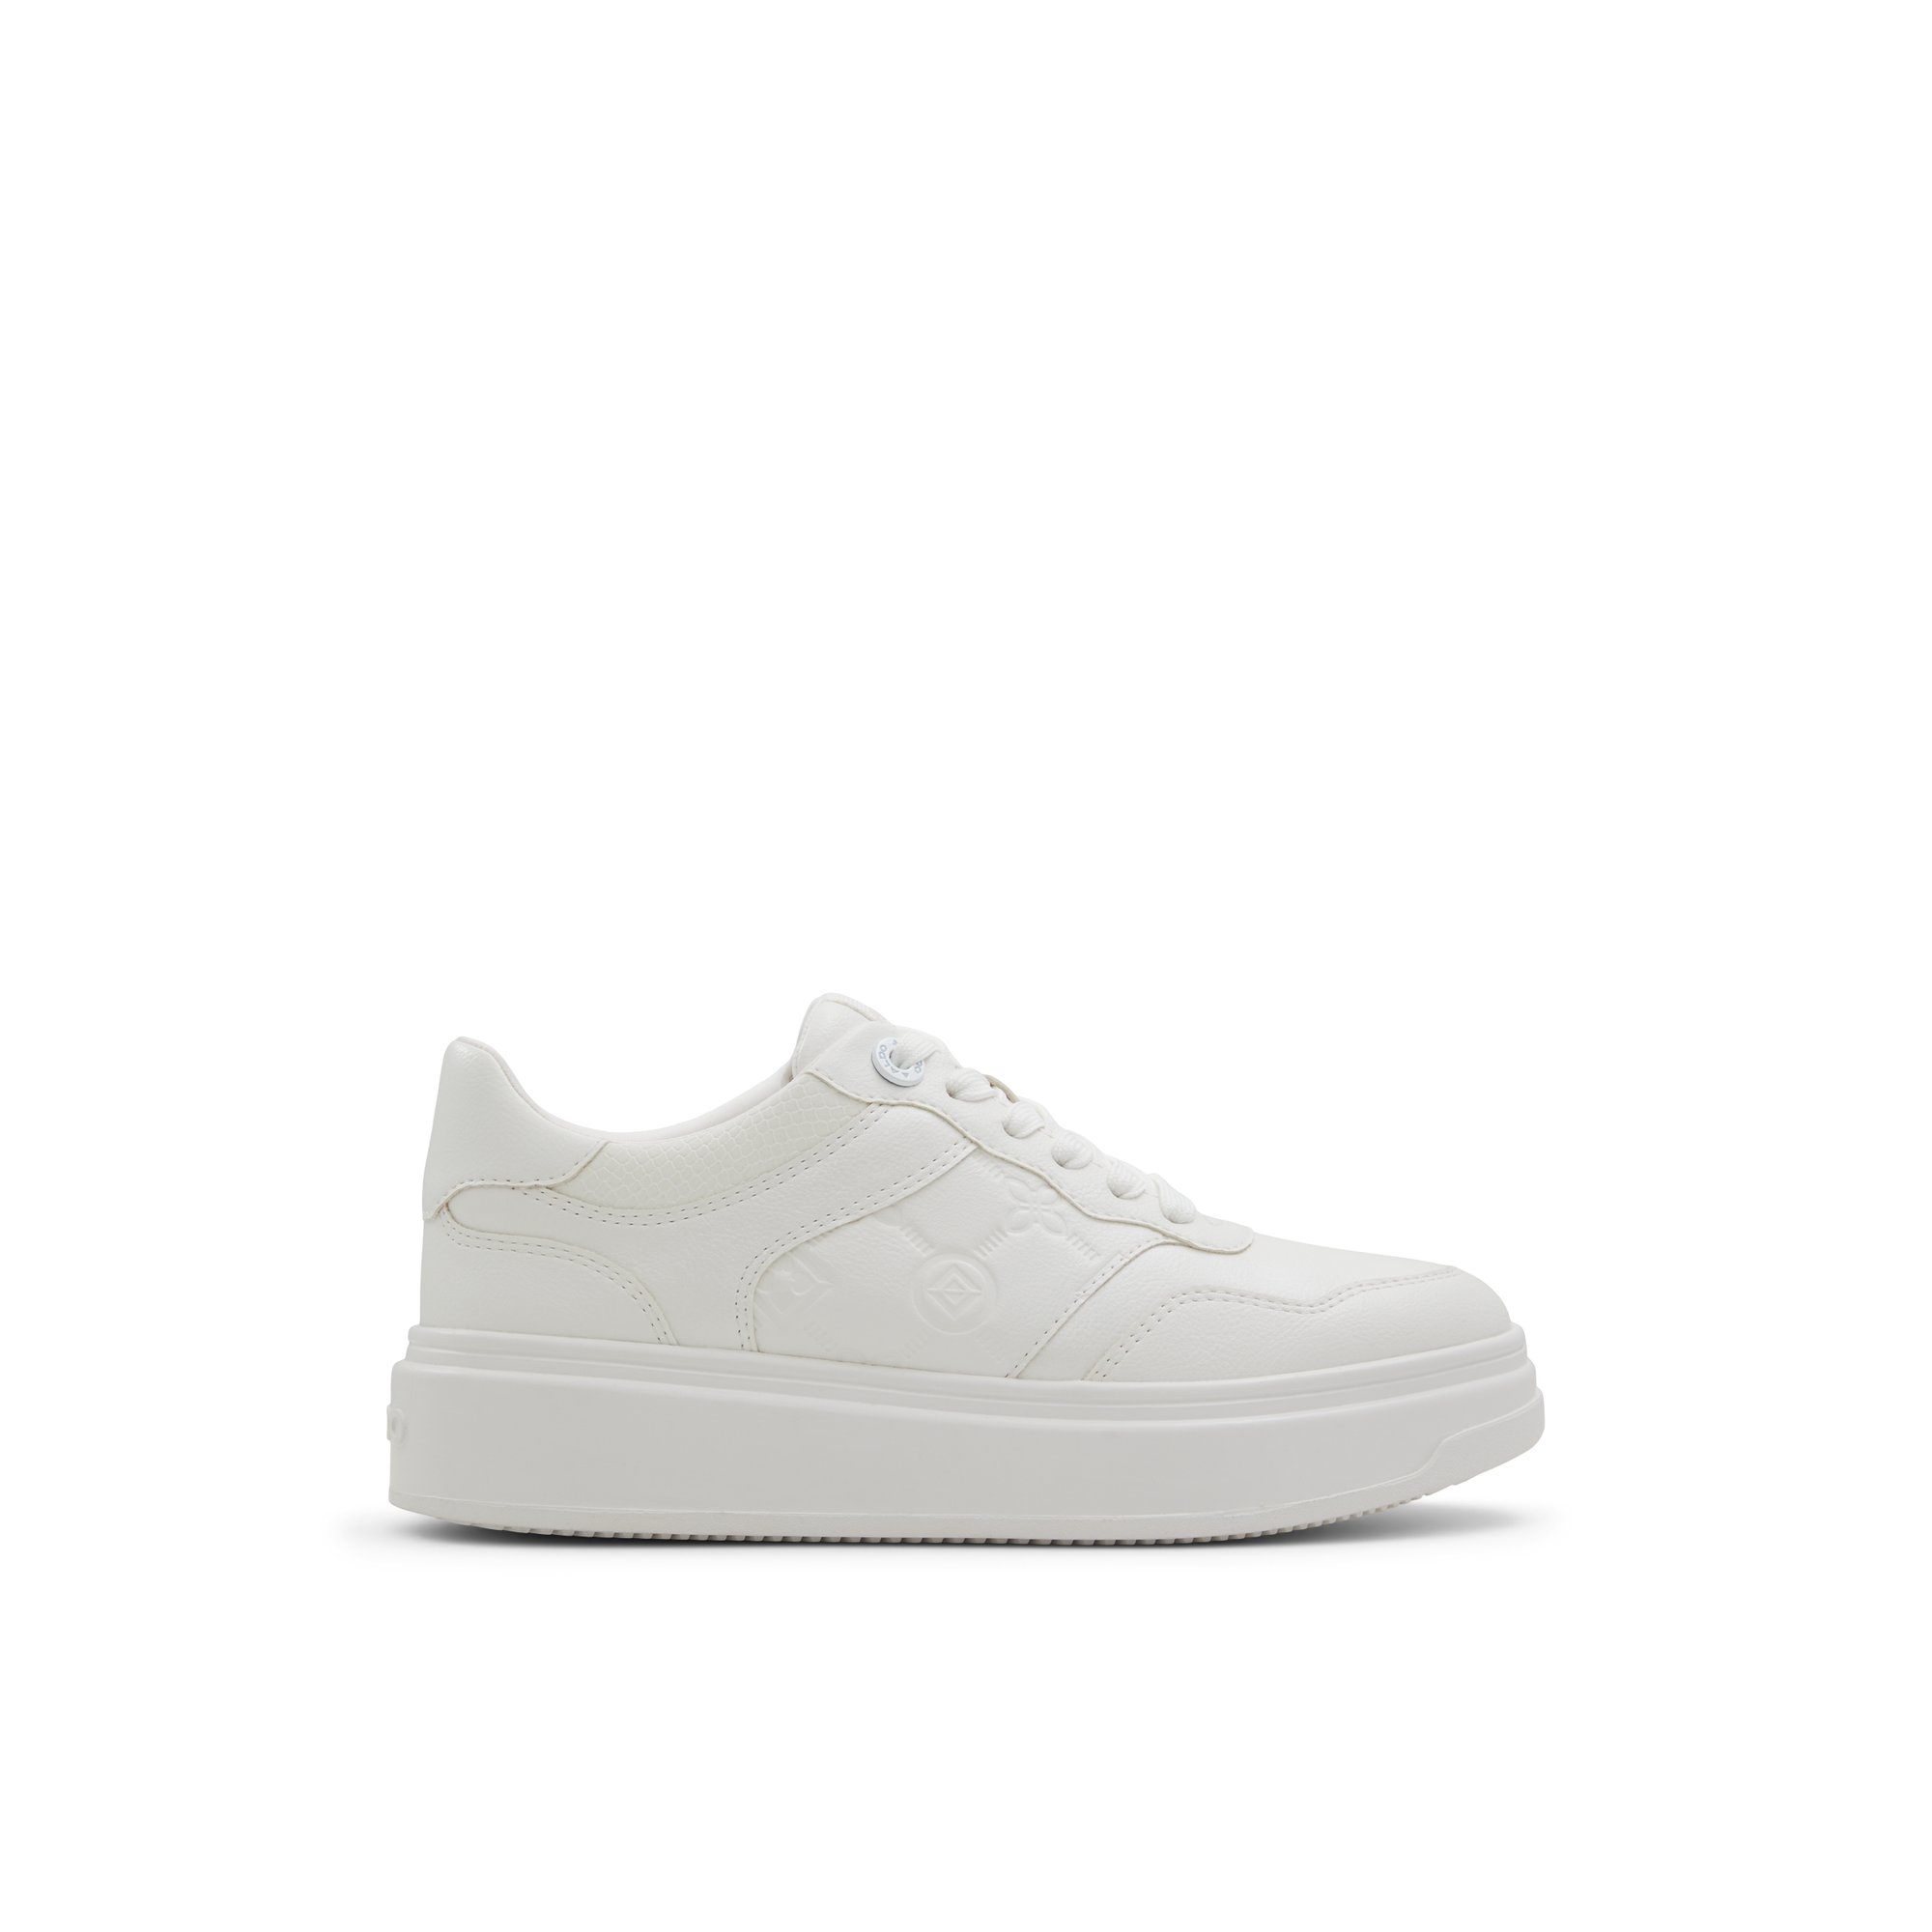 ALDO Sclub - Women's Low Top Sneaker Sneakers - White